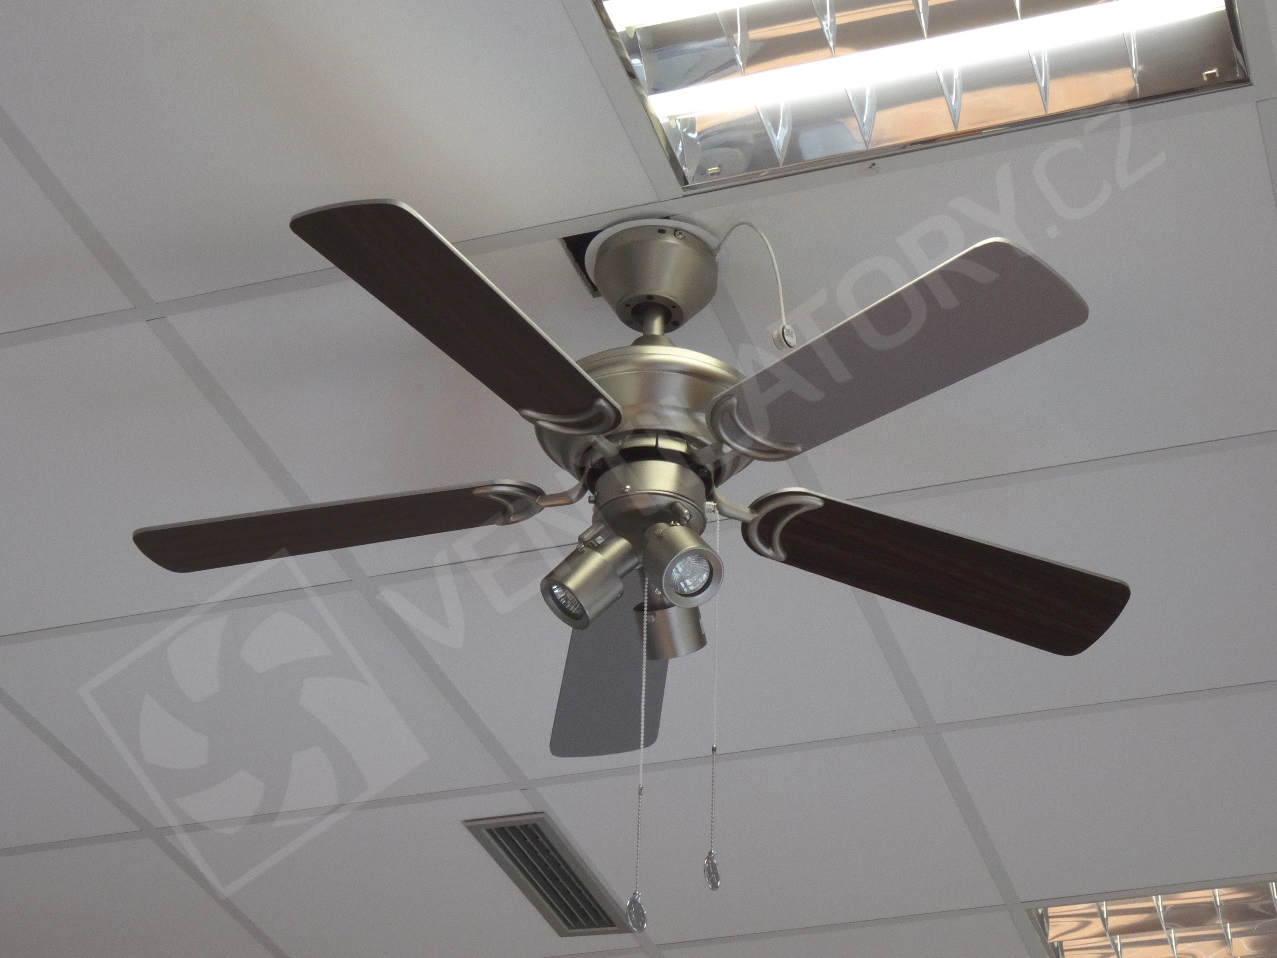 Reálné použití stropního ventilátoru Westinghouse Kingston